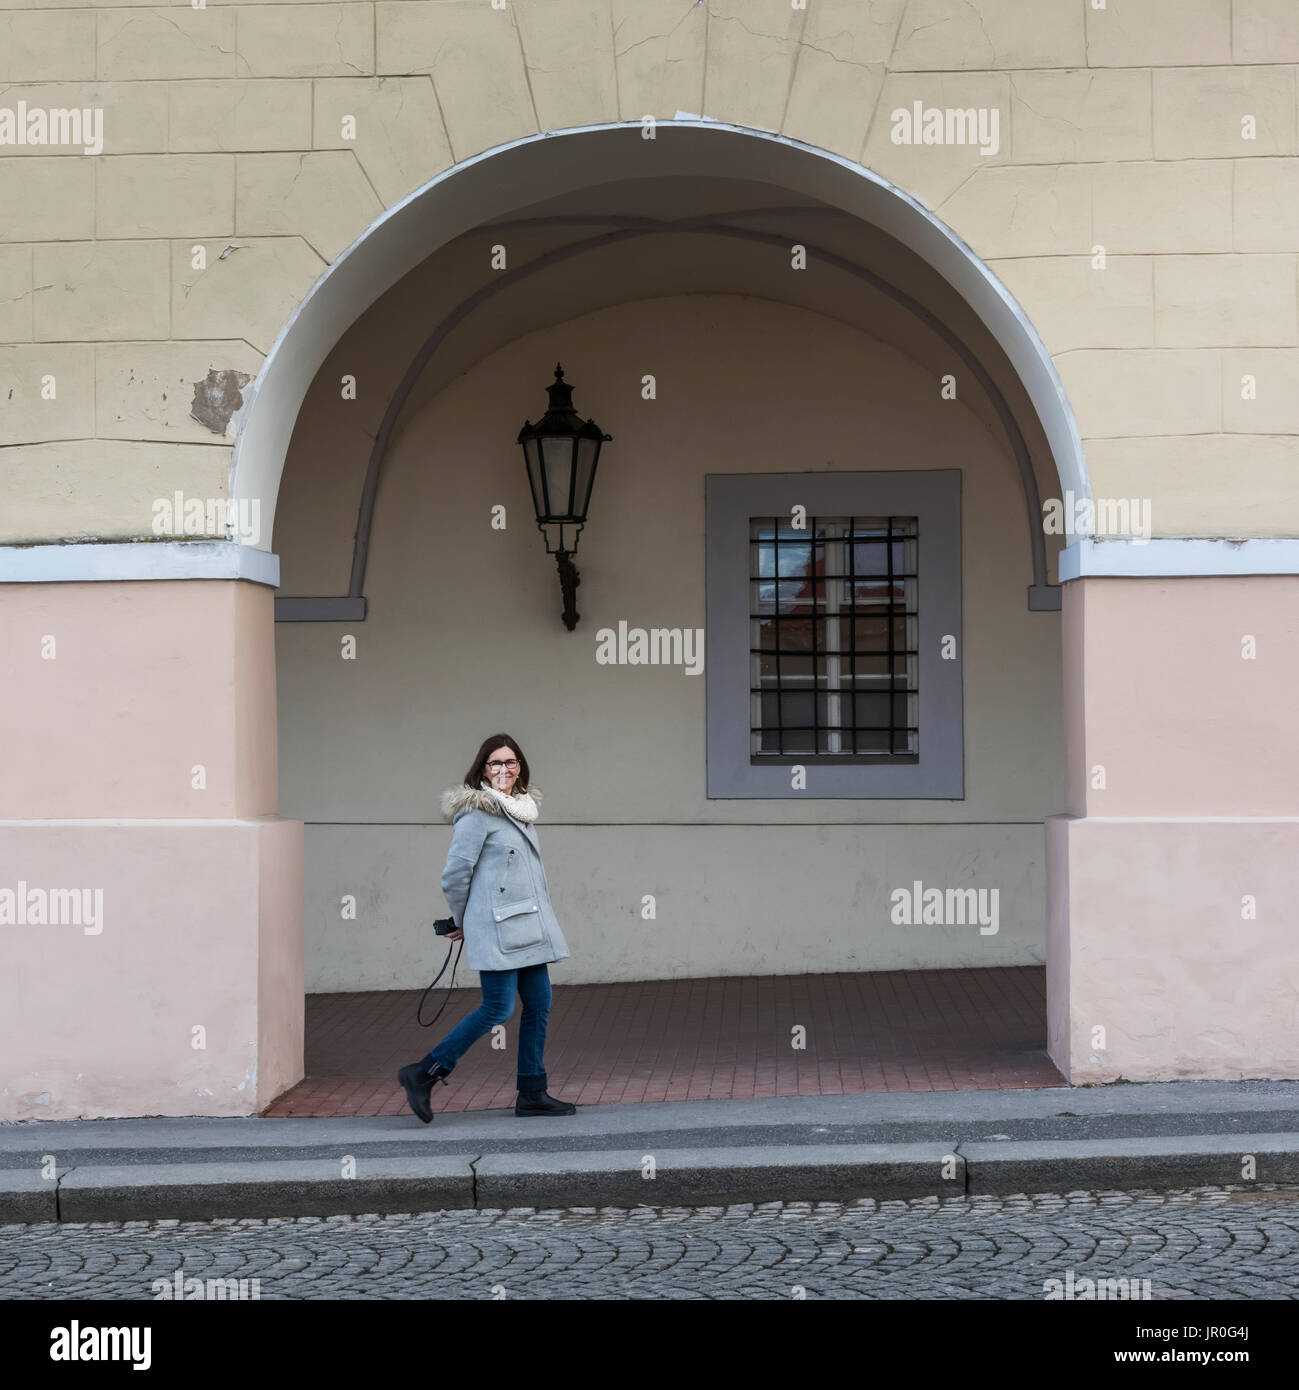 Une femme déambule par un bâtiment dans une arcade avec un sourire, tenant une caméra derrière son dos ; Prague, République Tchèque Banque D'Images